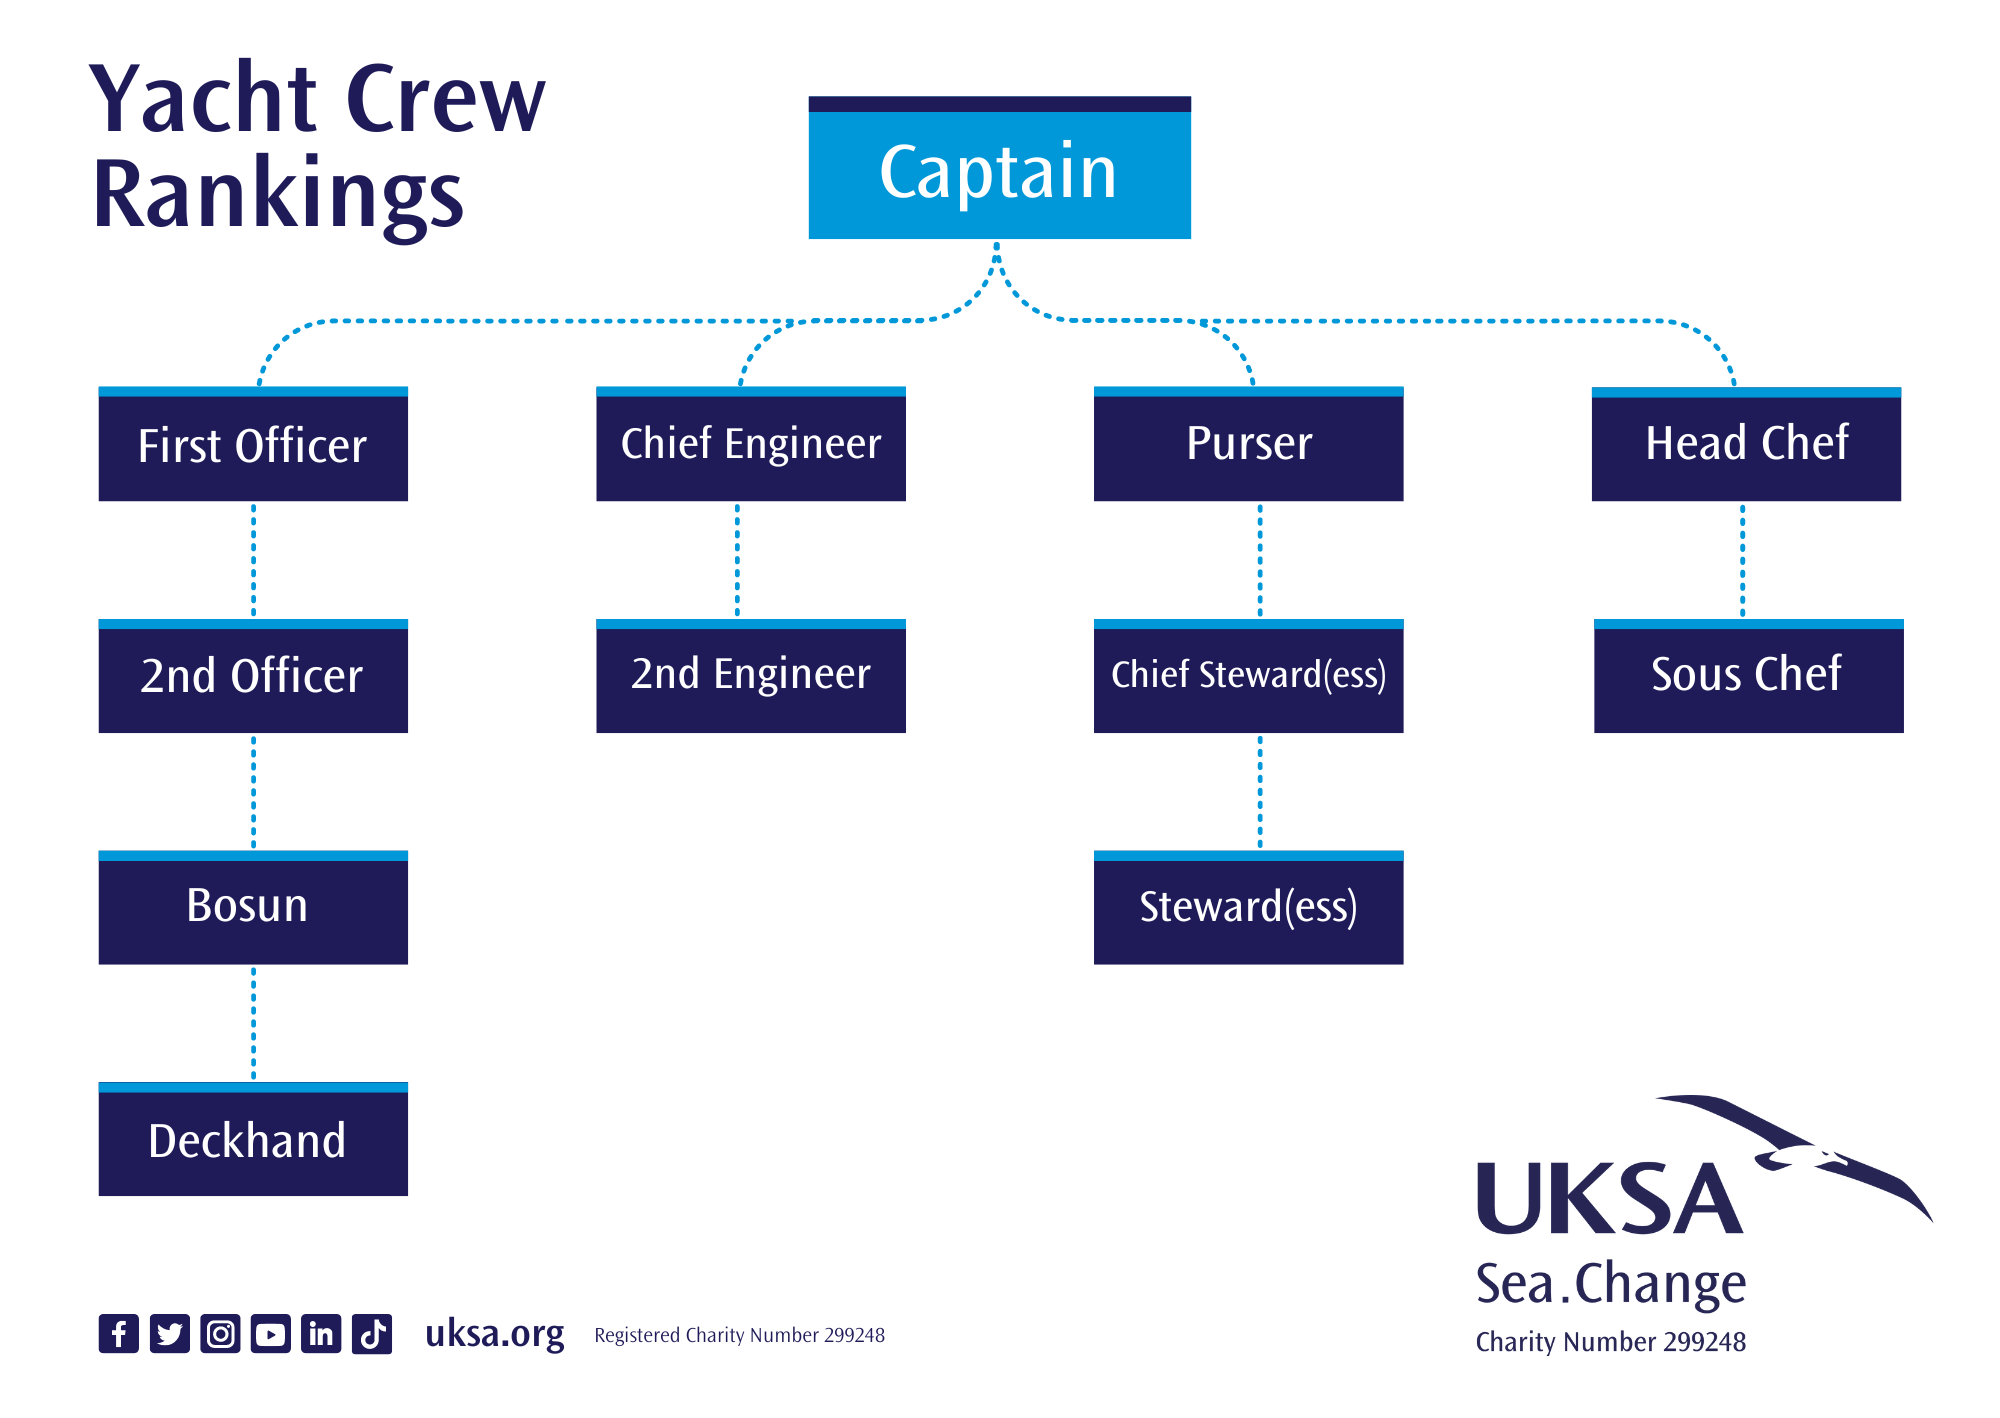 Yacht crew rankings chart